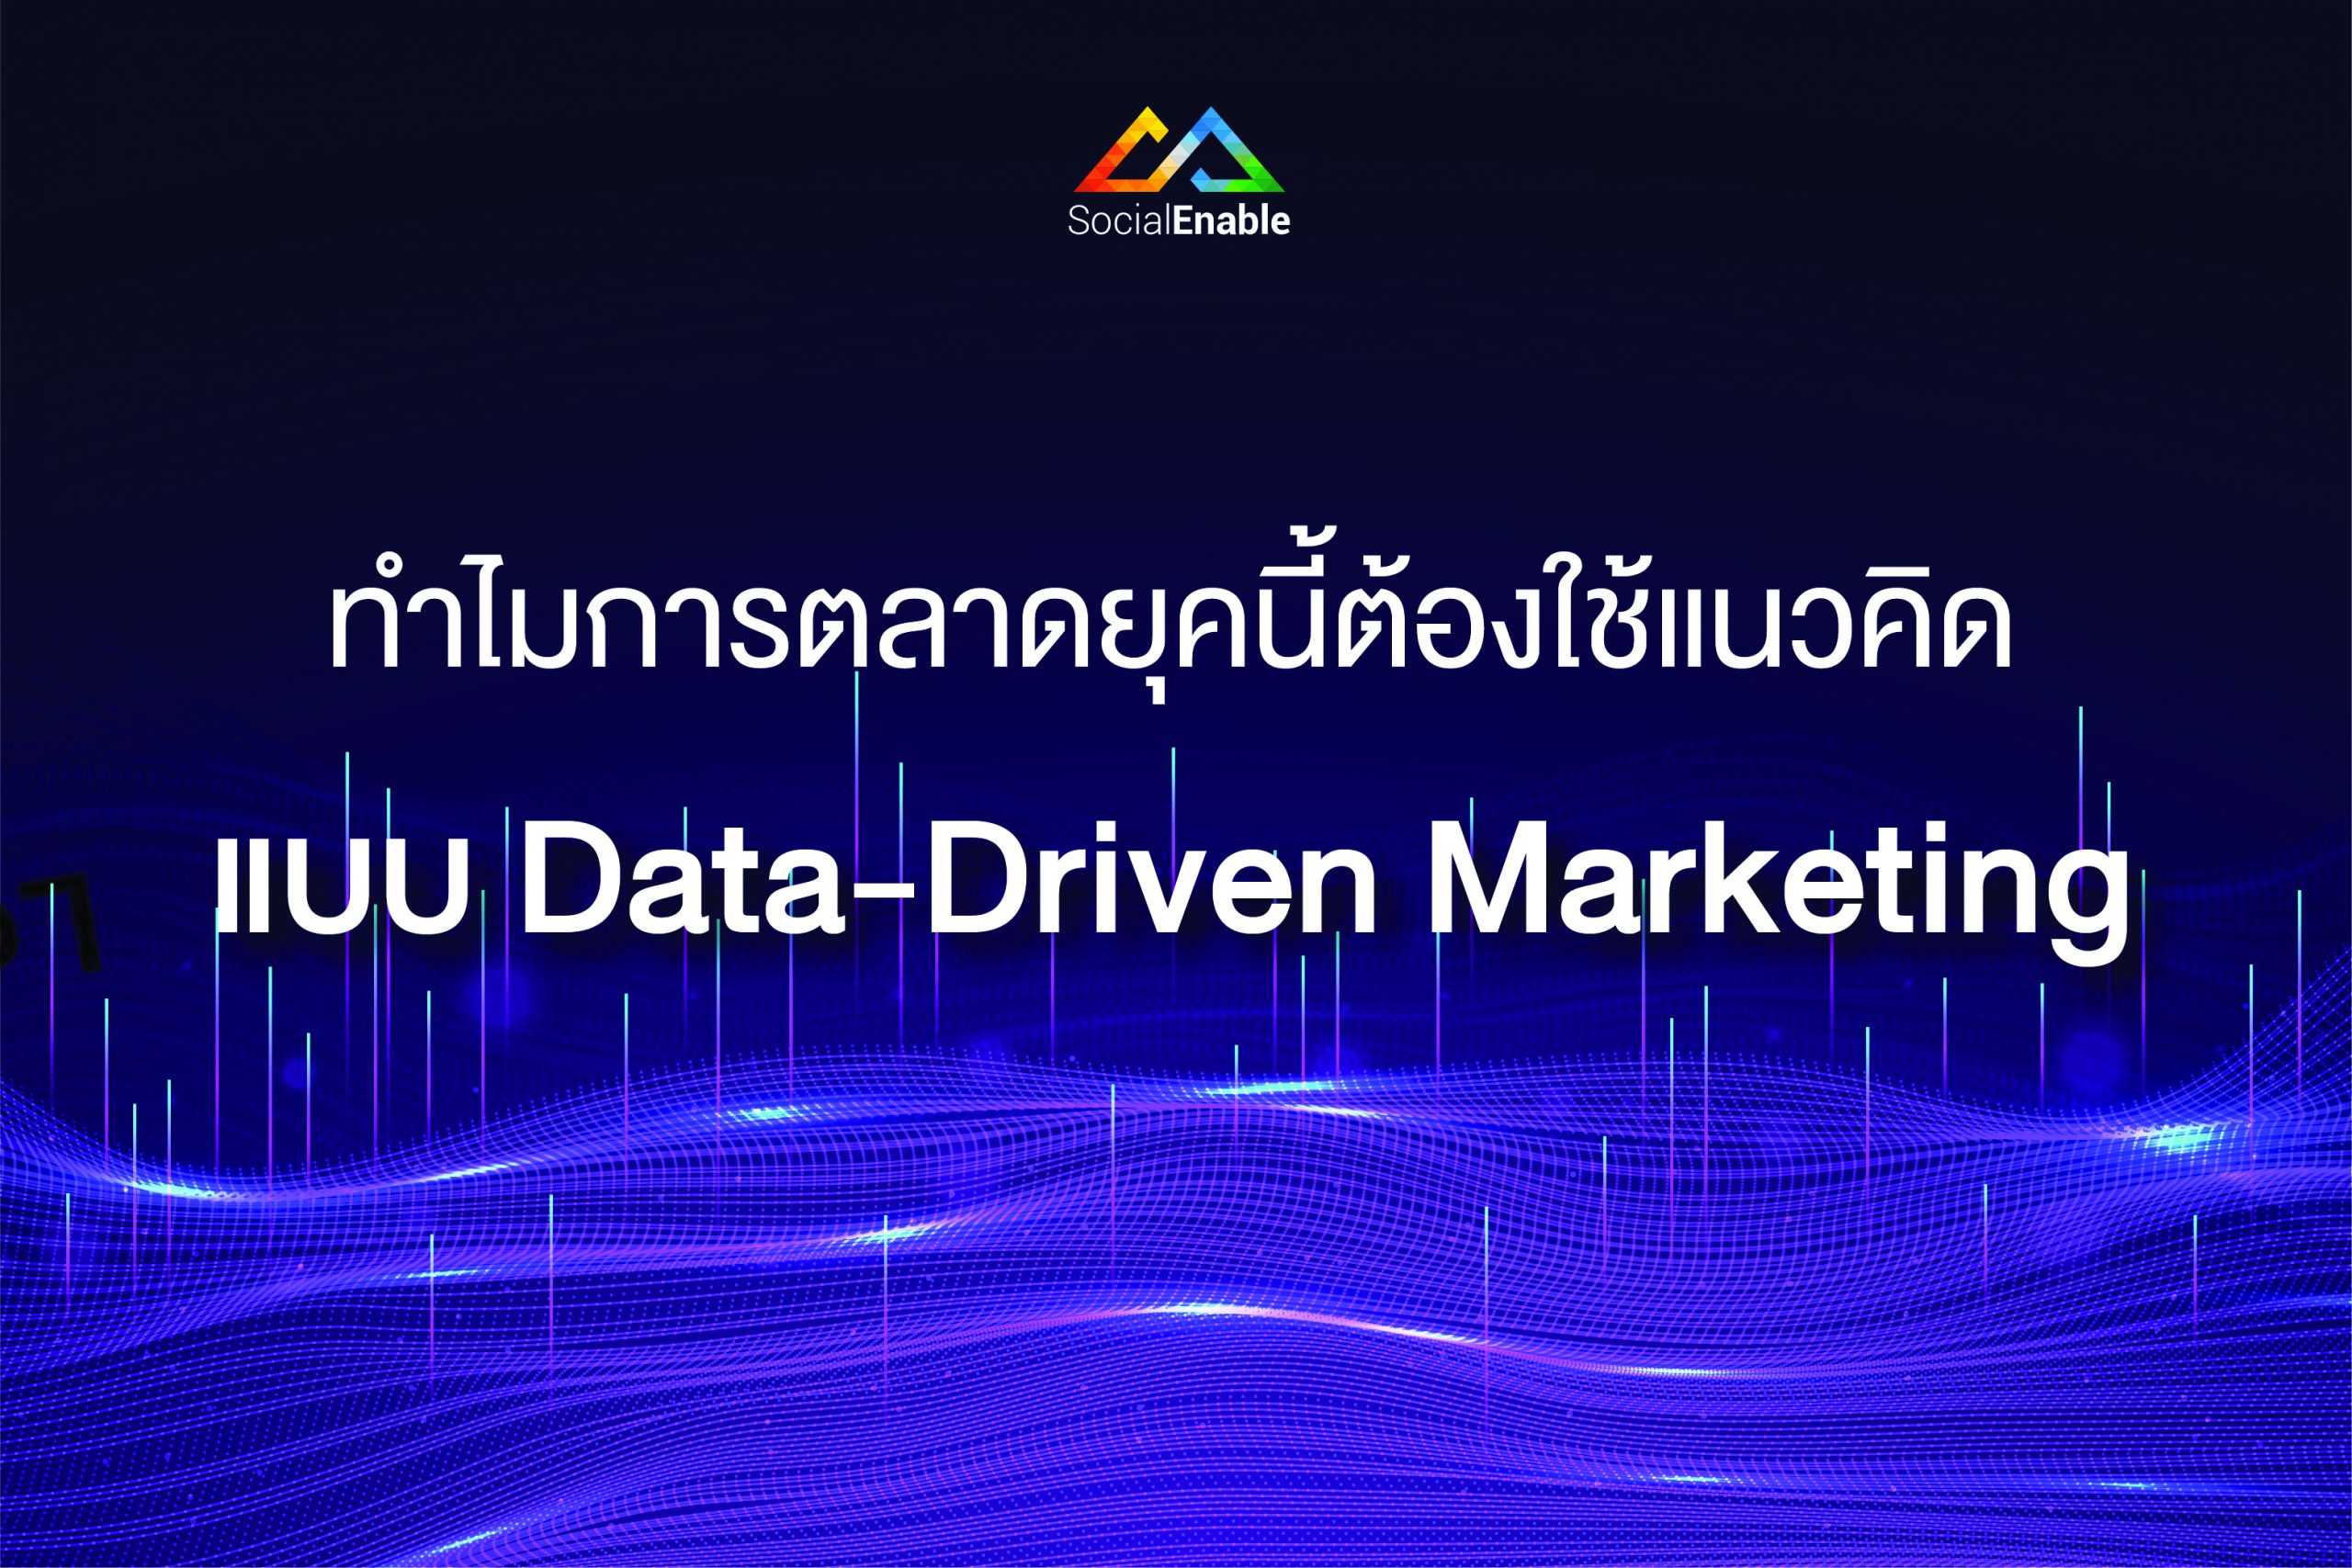 ทำไมการตลาดยุคนี้ต้องใช้แนวคิดแบบ “Data-Driven Marketing”